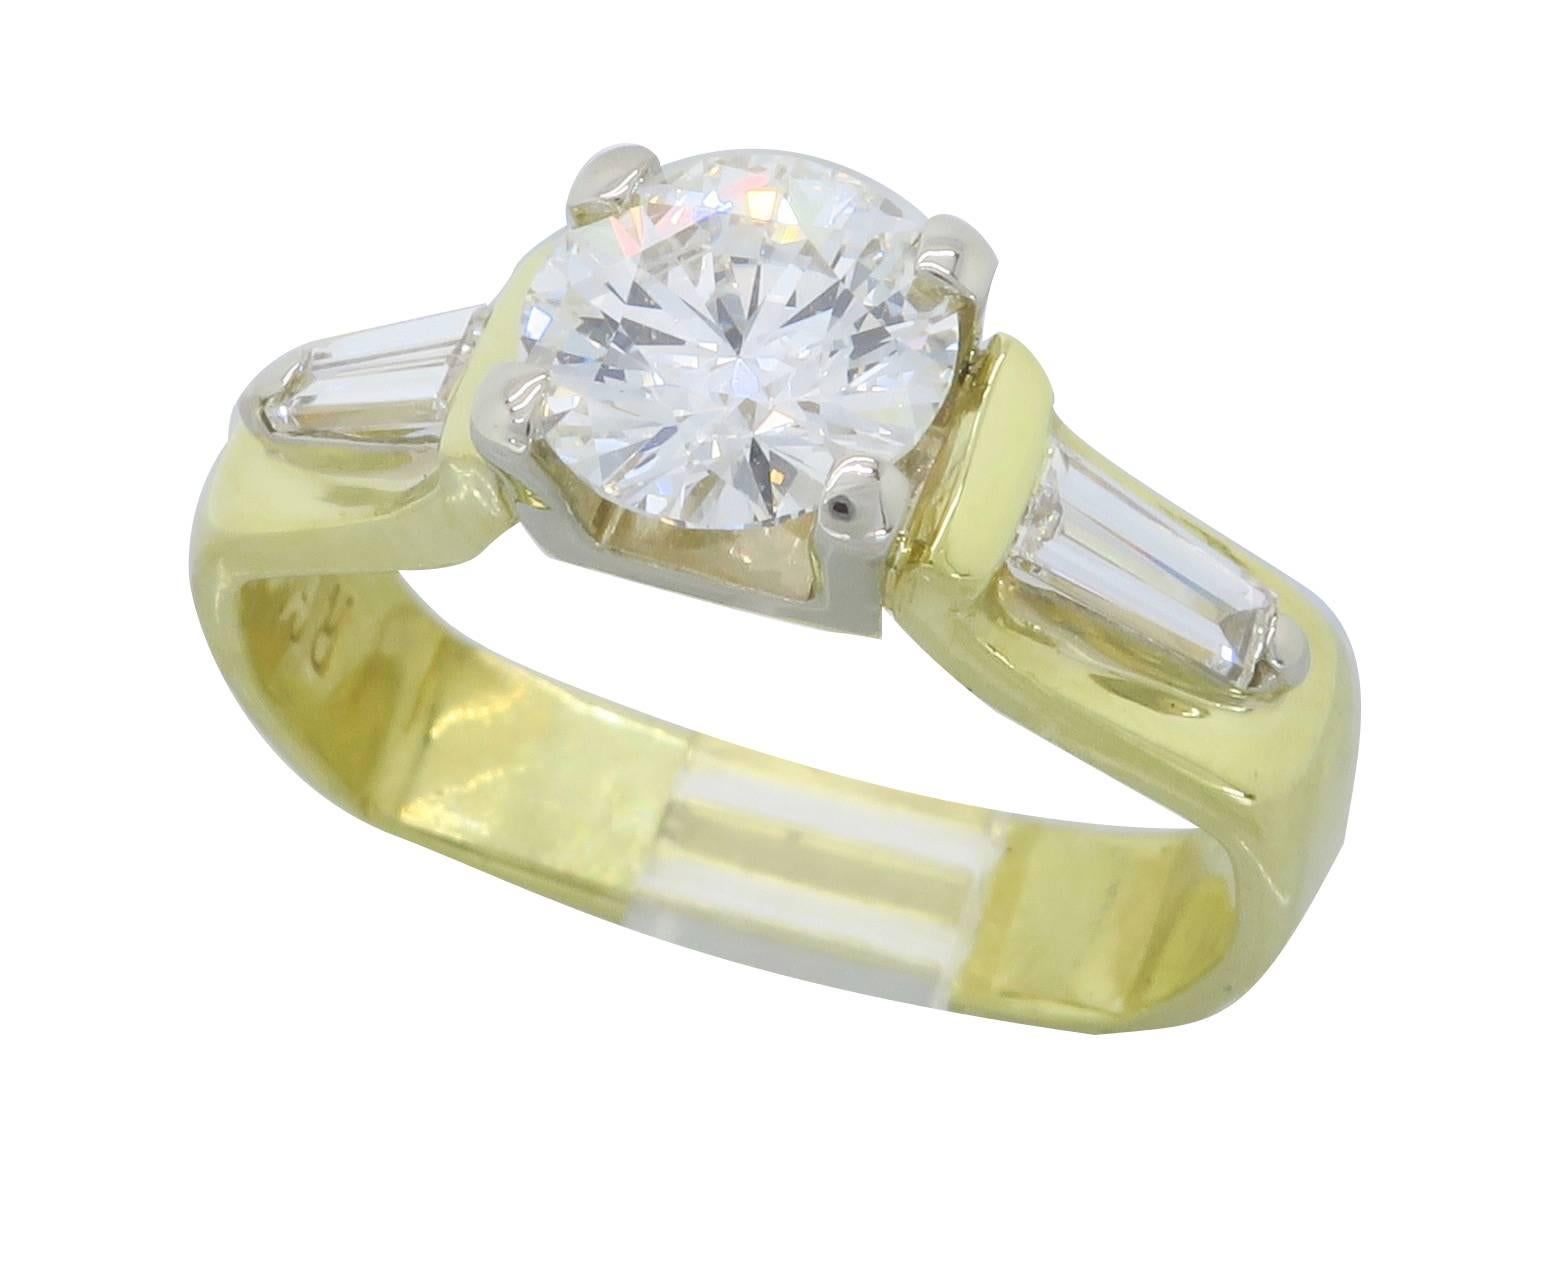 1.29 Carat Diamond 18 Karat Gold Engagement Ring 2